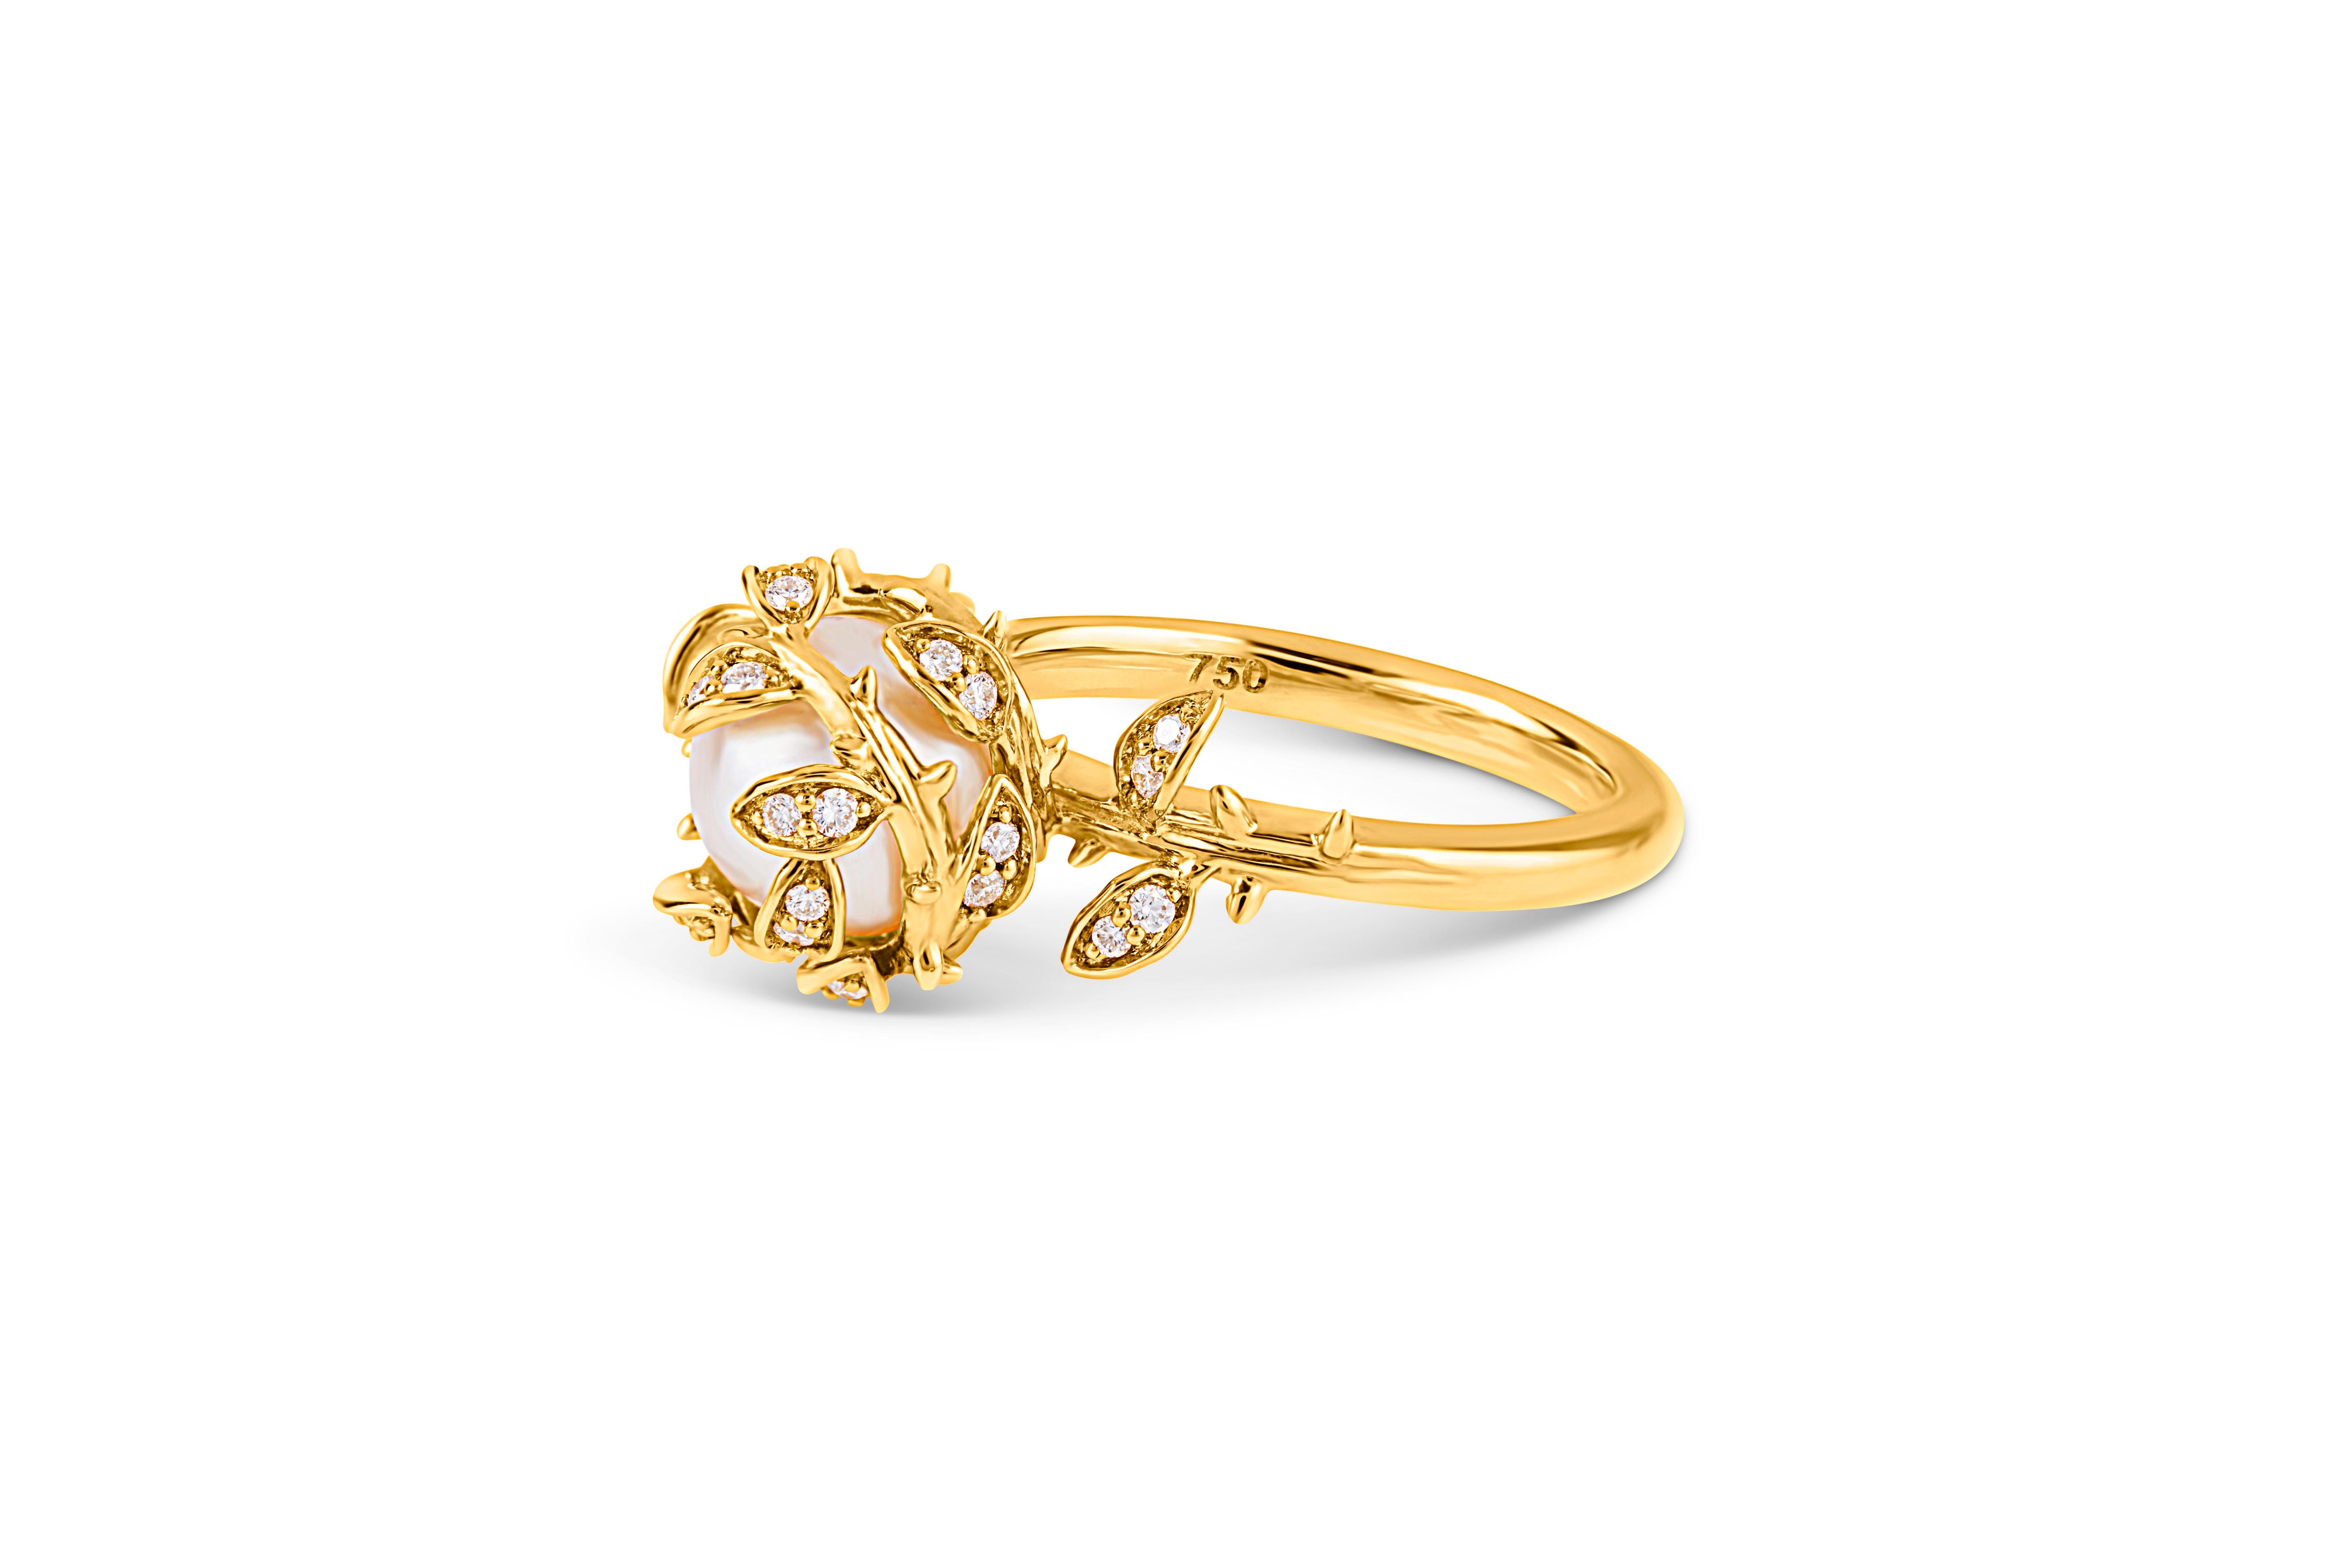 Cette bague habillée très détaillée présente une perle d'eau douce nichée parmi des feuilles de diamant et montée sur un anneau en or jaune 18ct. Notre bague à perles imbriquées représente les 